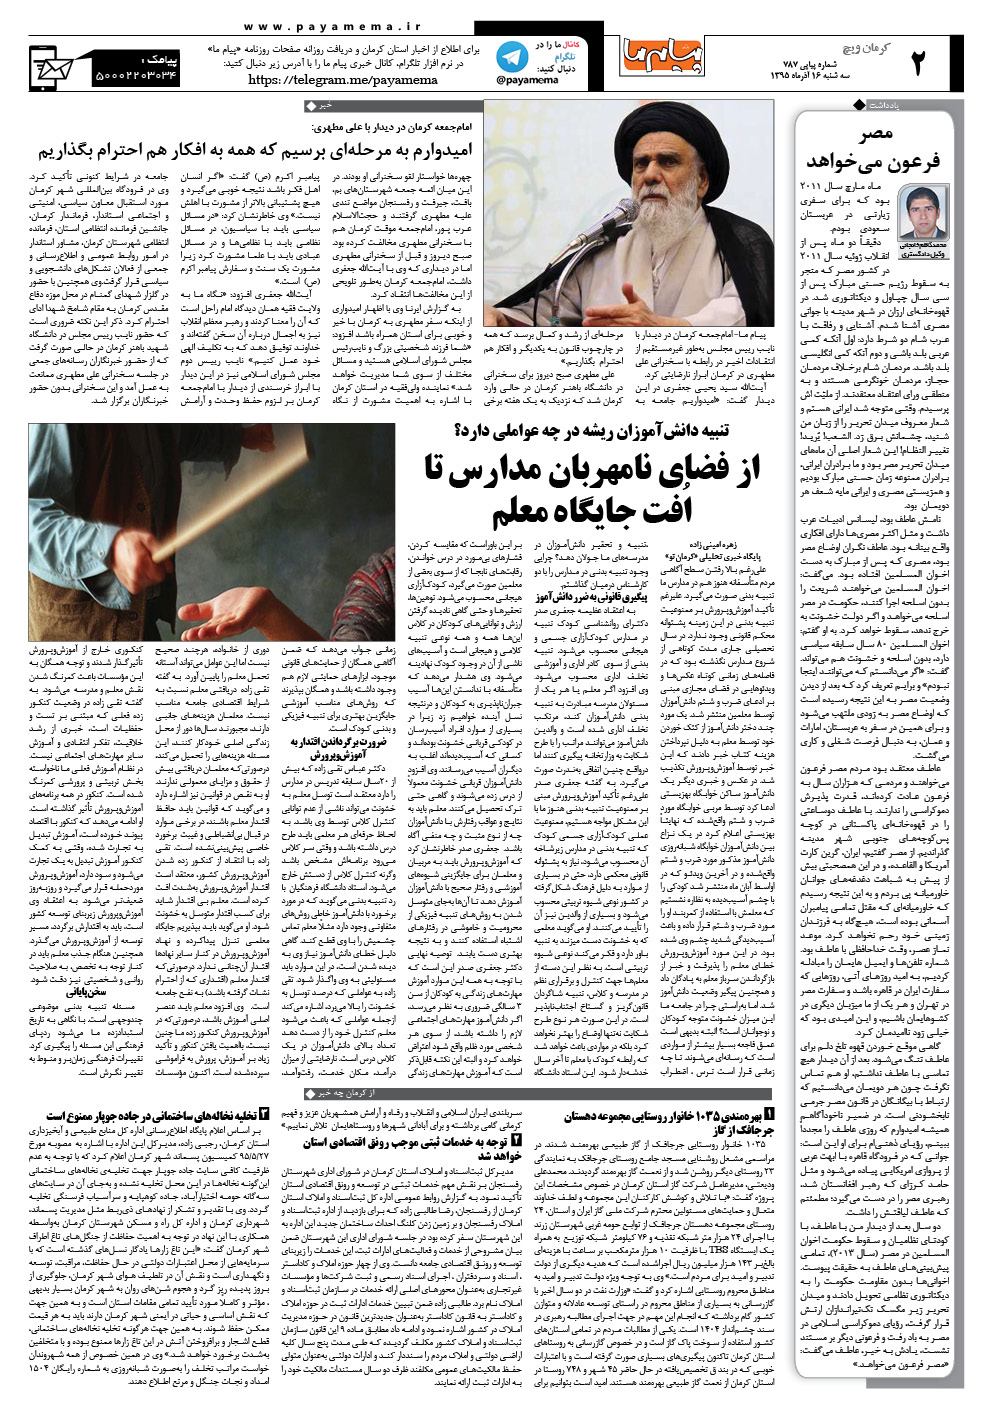 صفحه کرمان ویچ شماره 787 روزنامه پیام ما